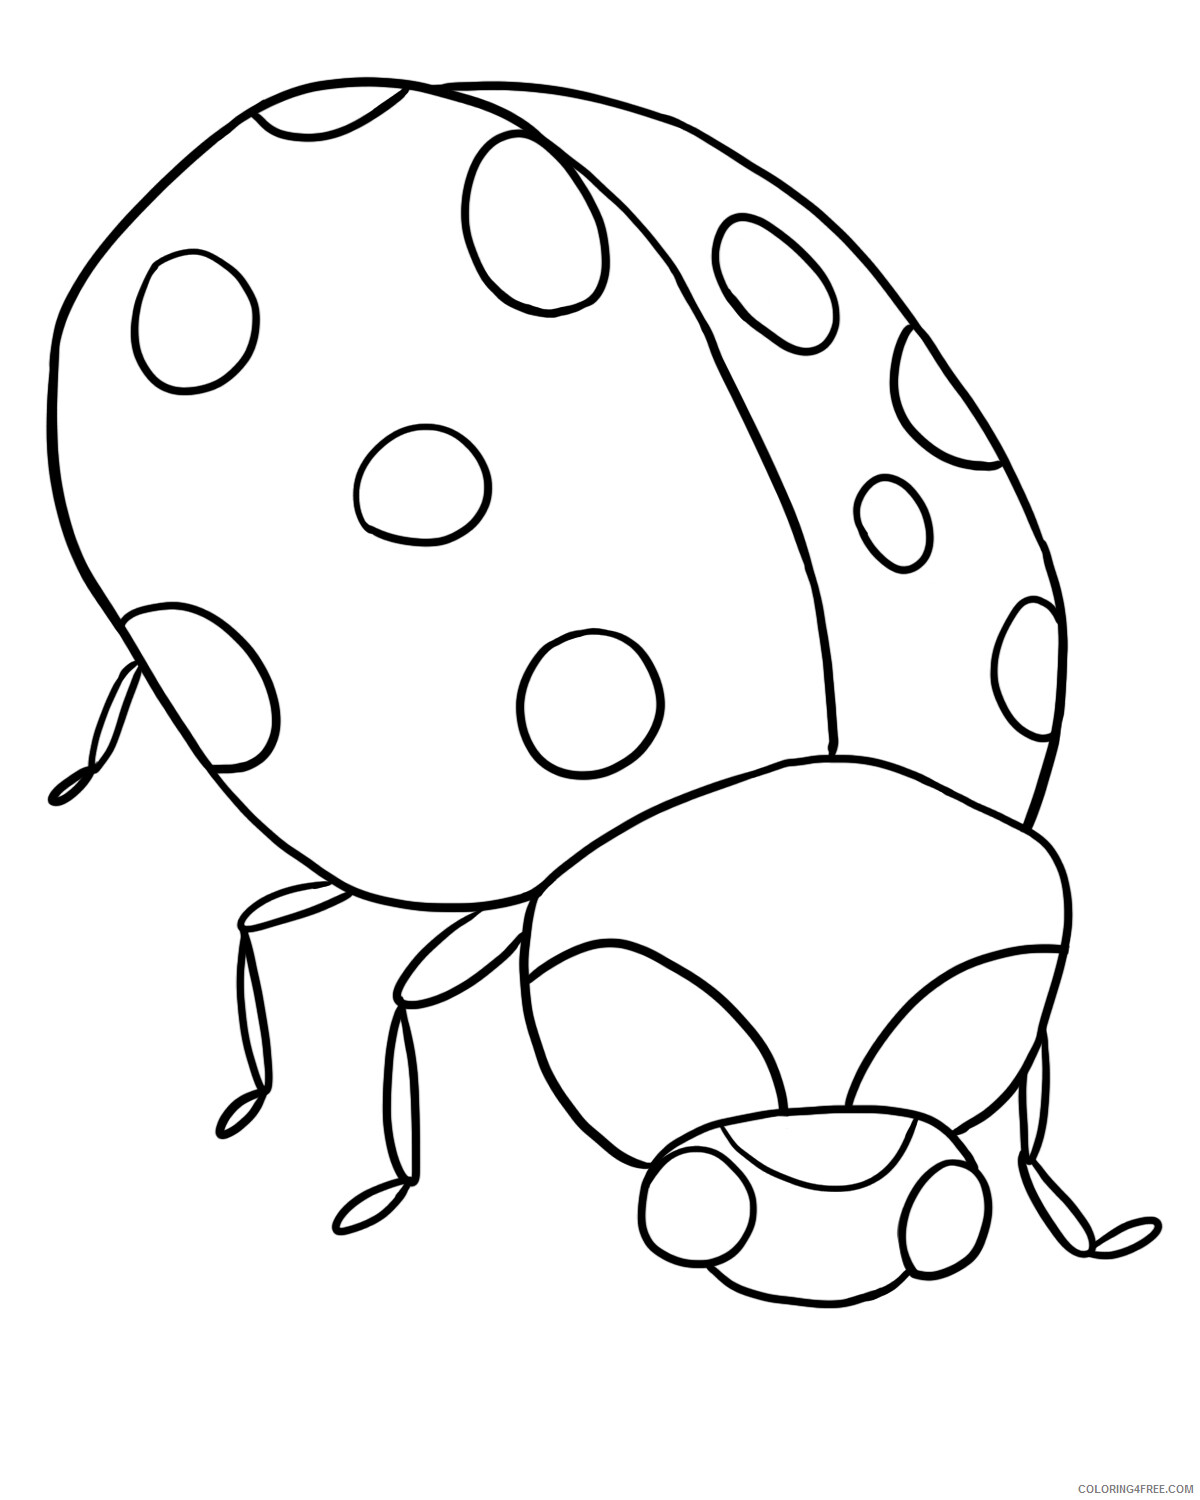 Ladybug Coloring Pages Animal Printable Sheets Ladybug For Kids 2021 3085 Coloring4free